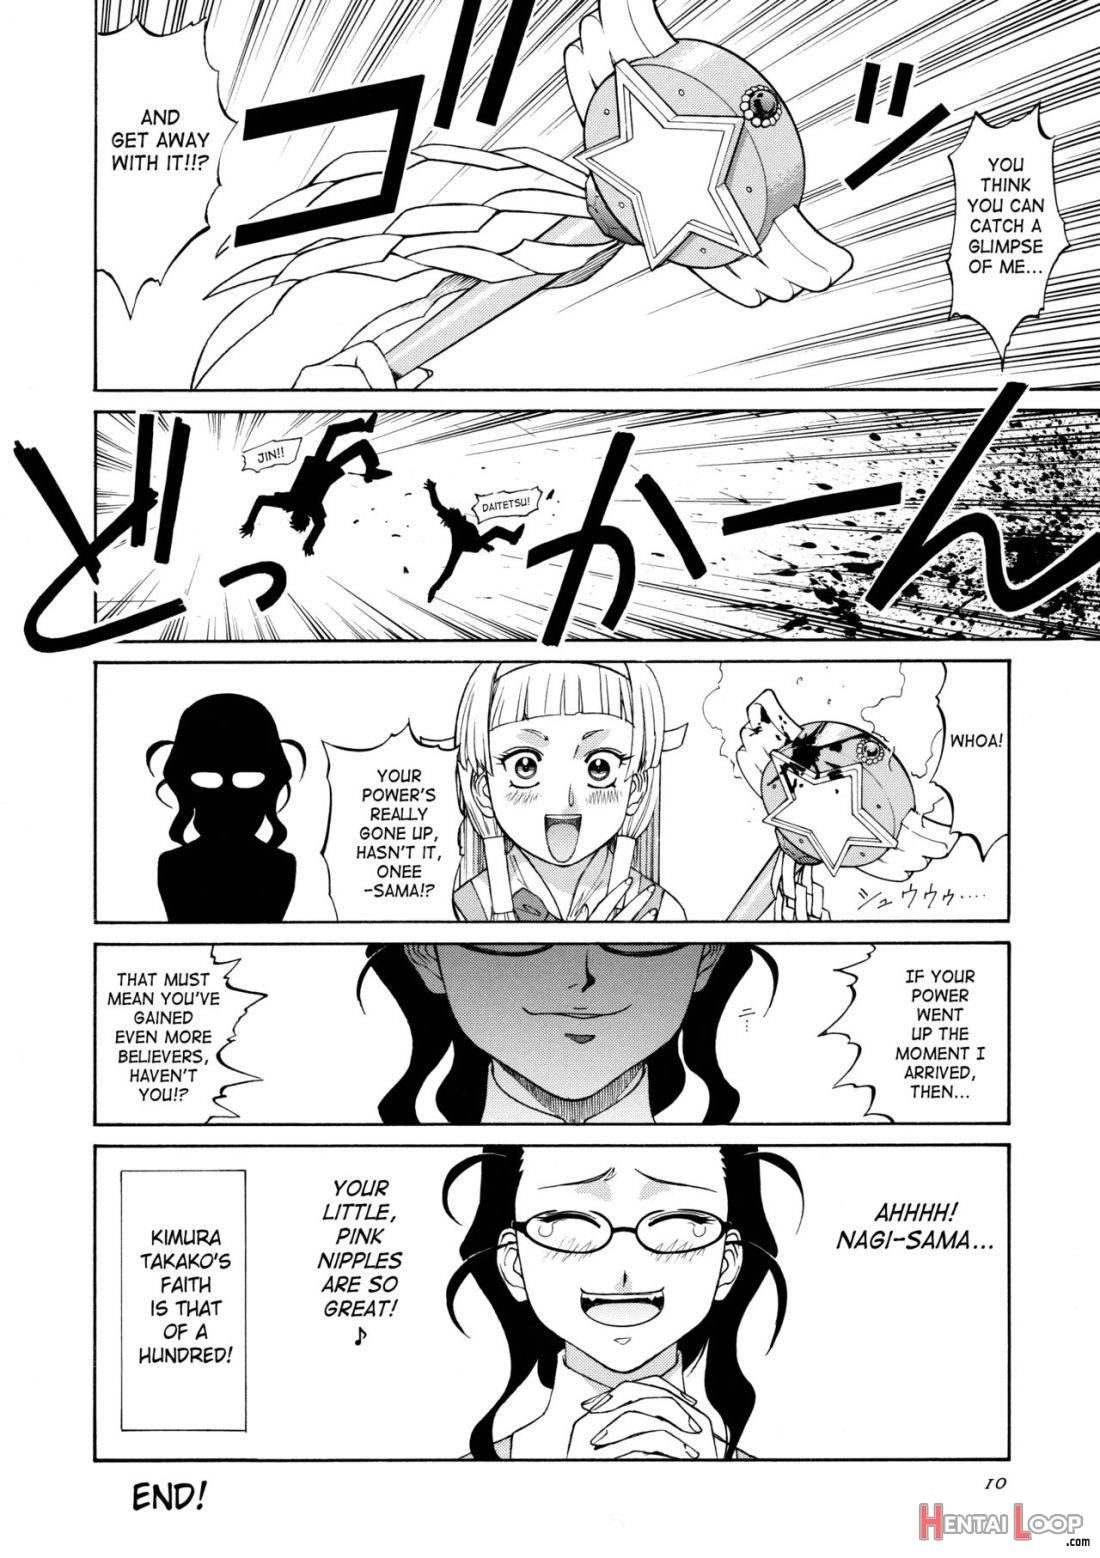 Kamisama Megaton Punch 11 page 7